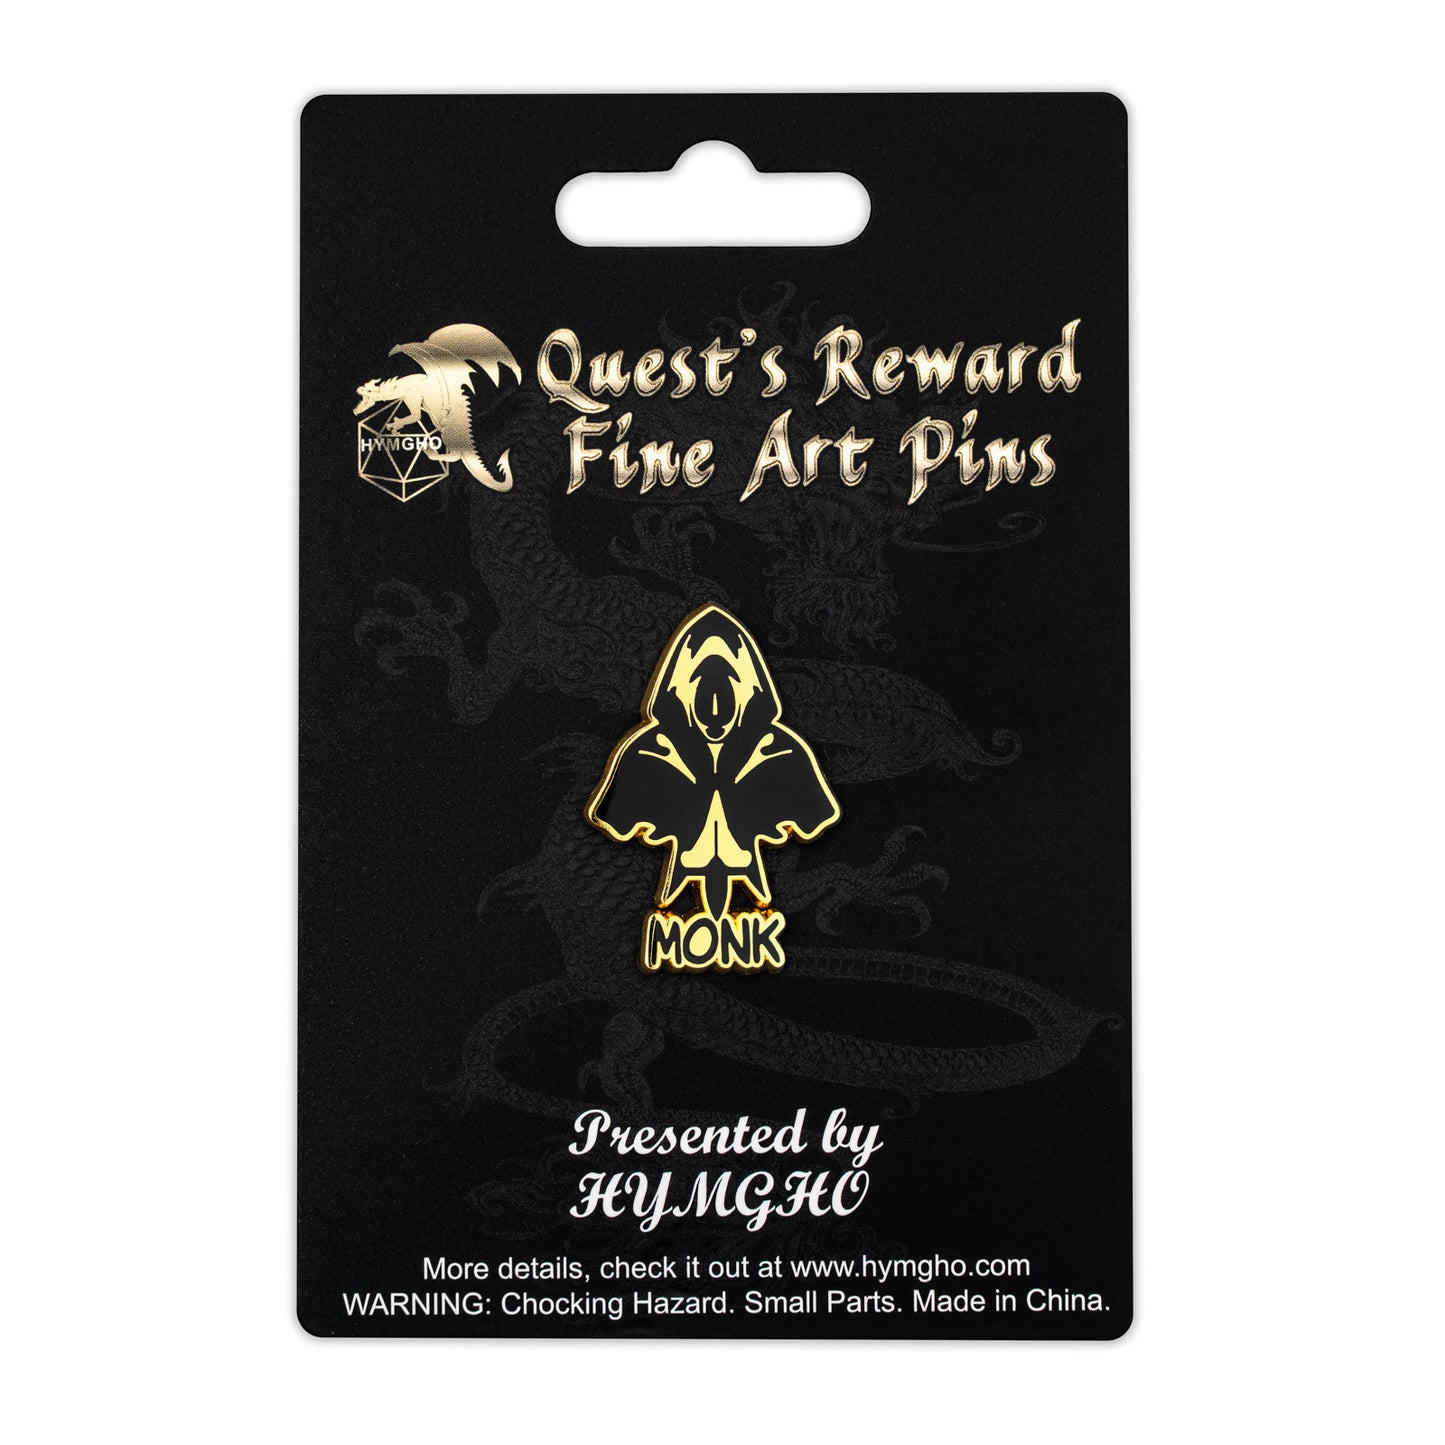 Quest's Reward Fine Art Class Pins: MONK